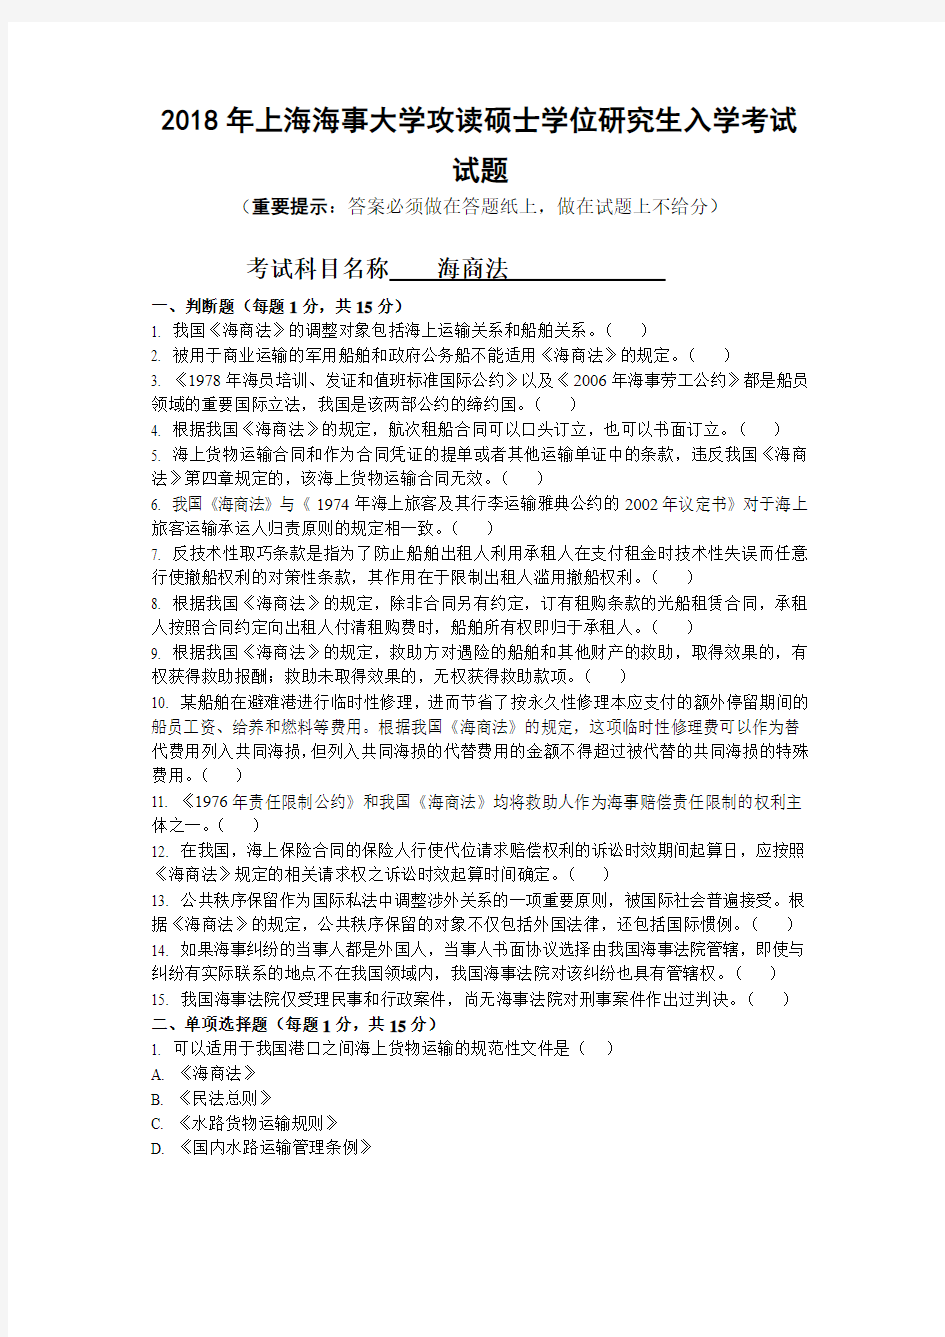 上海海事大学2018年《819海商法》考研专业课真题试卷